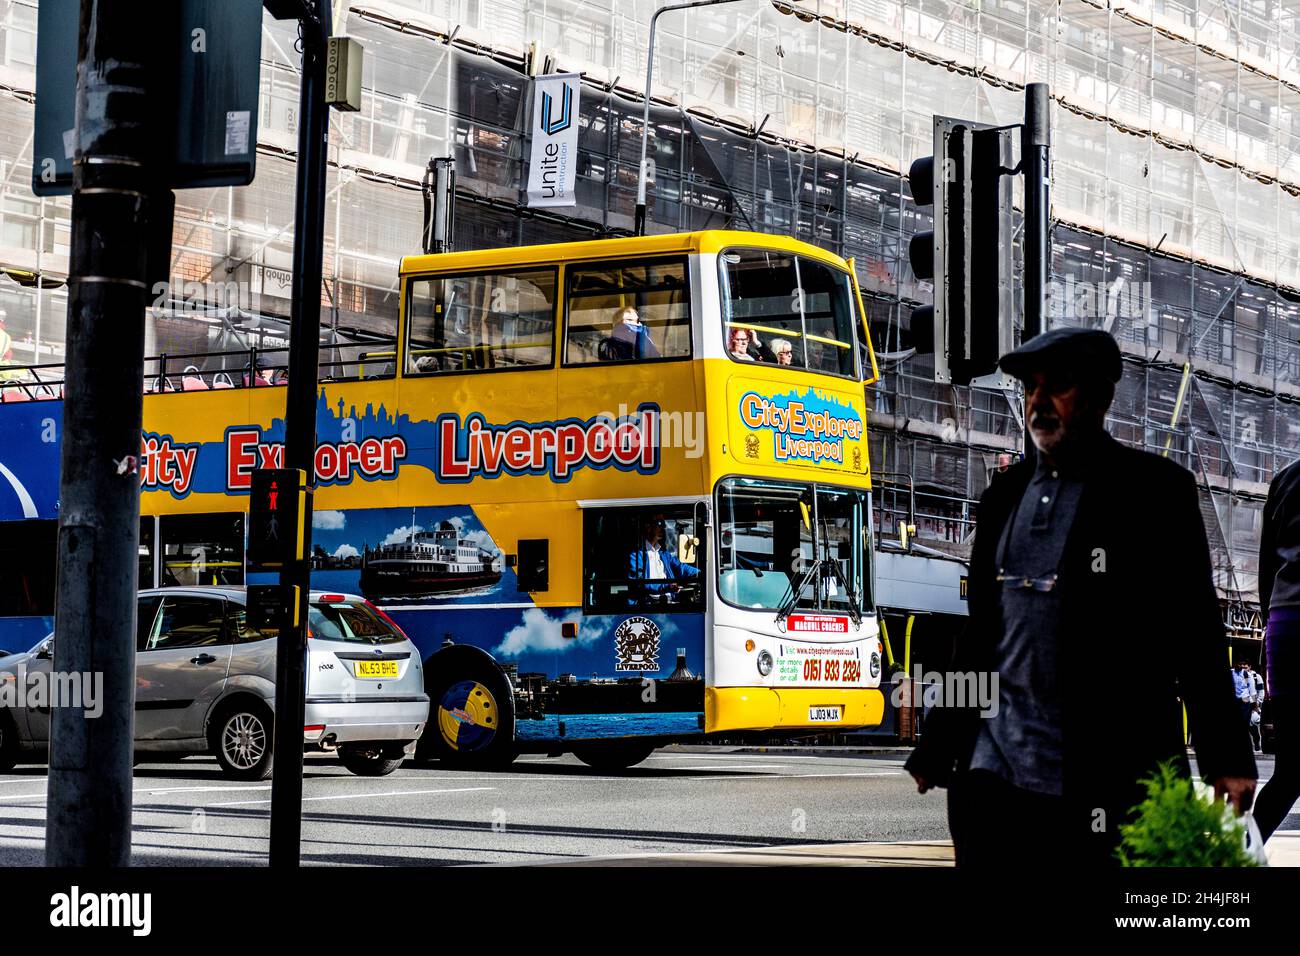 City Explorer Liverpool.Touristes en bus touristique dans le centre-ville. Banque D'Images